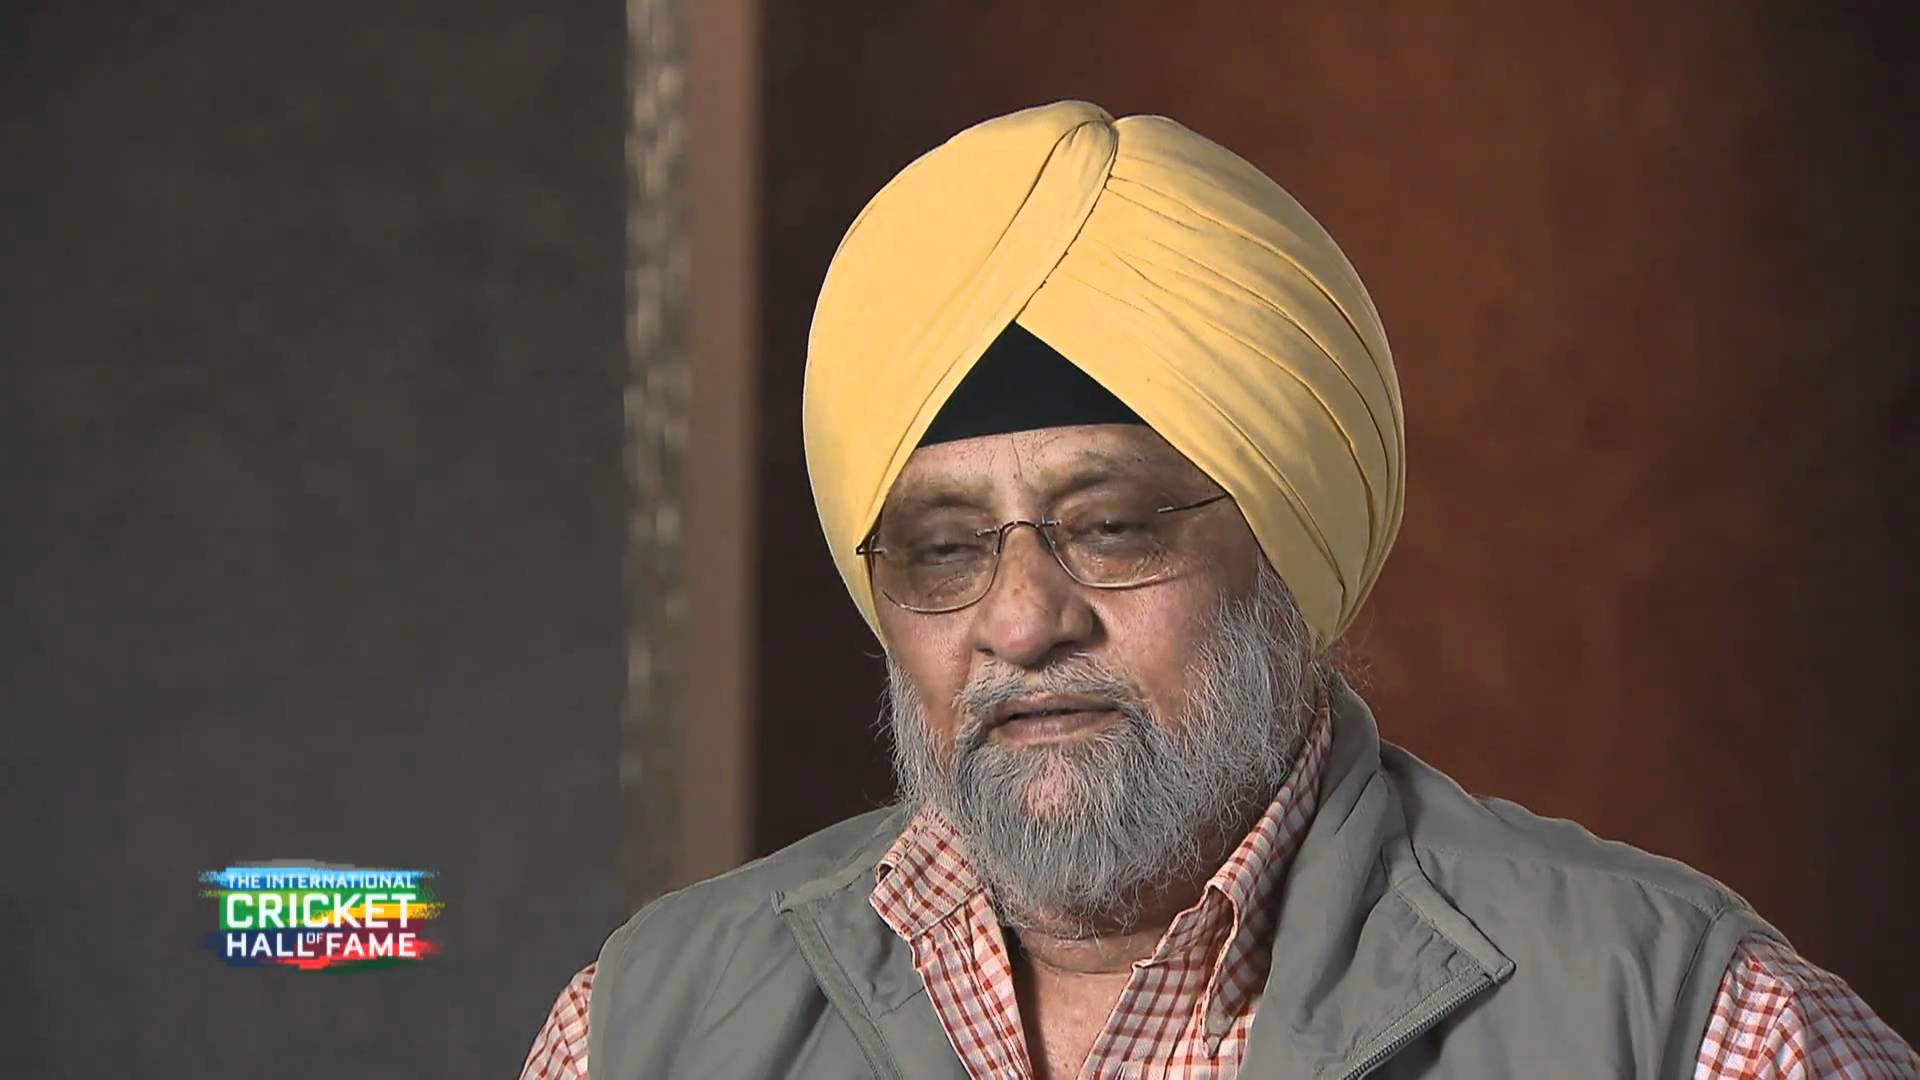 Bishan Singh Bedi Wearing Yellow Turban